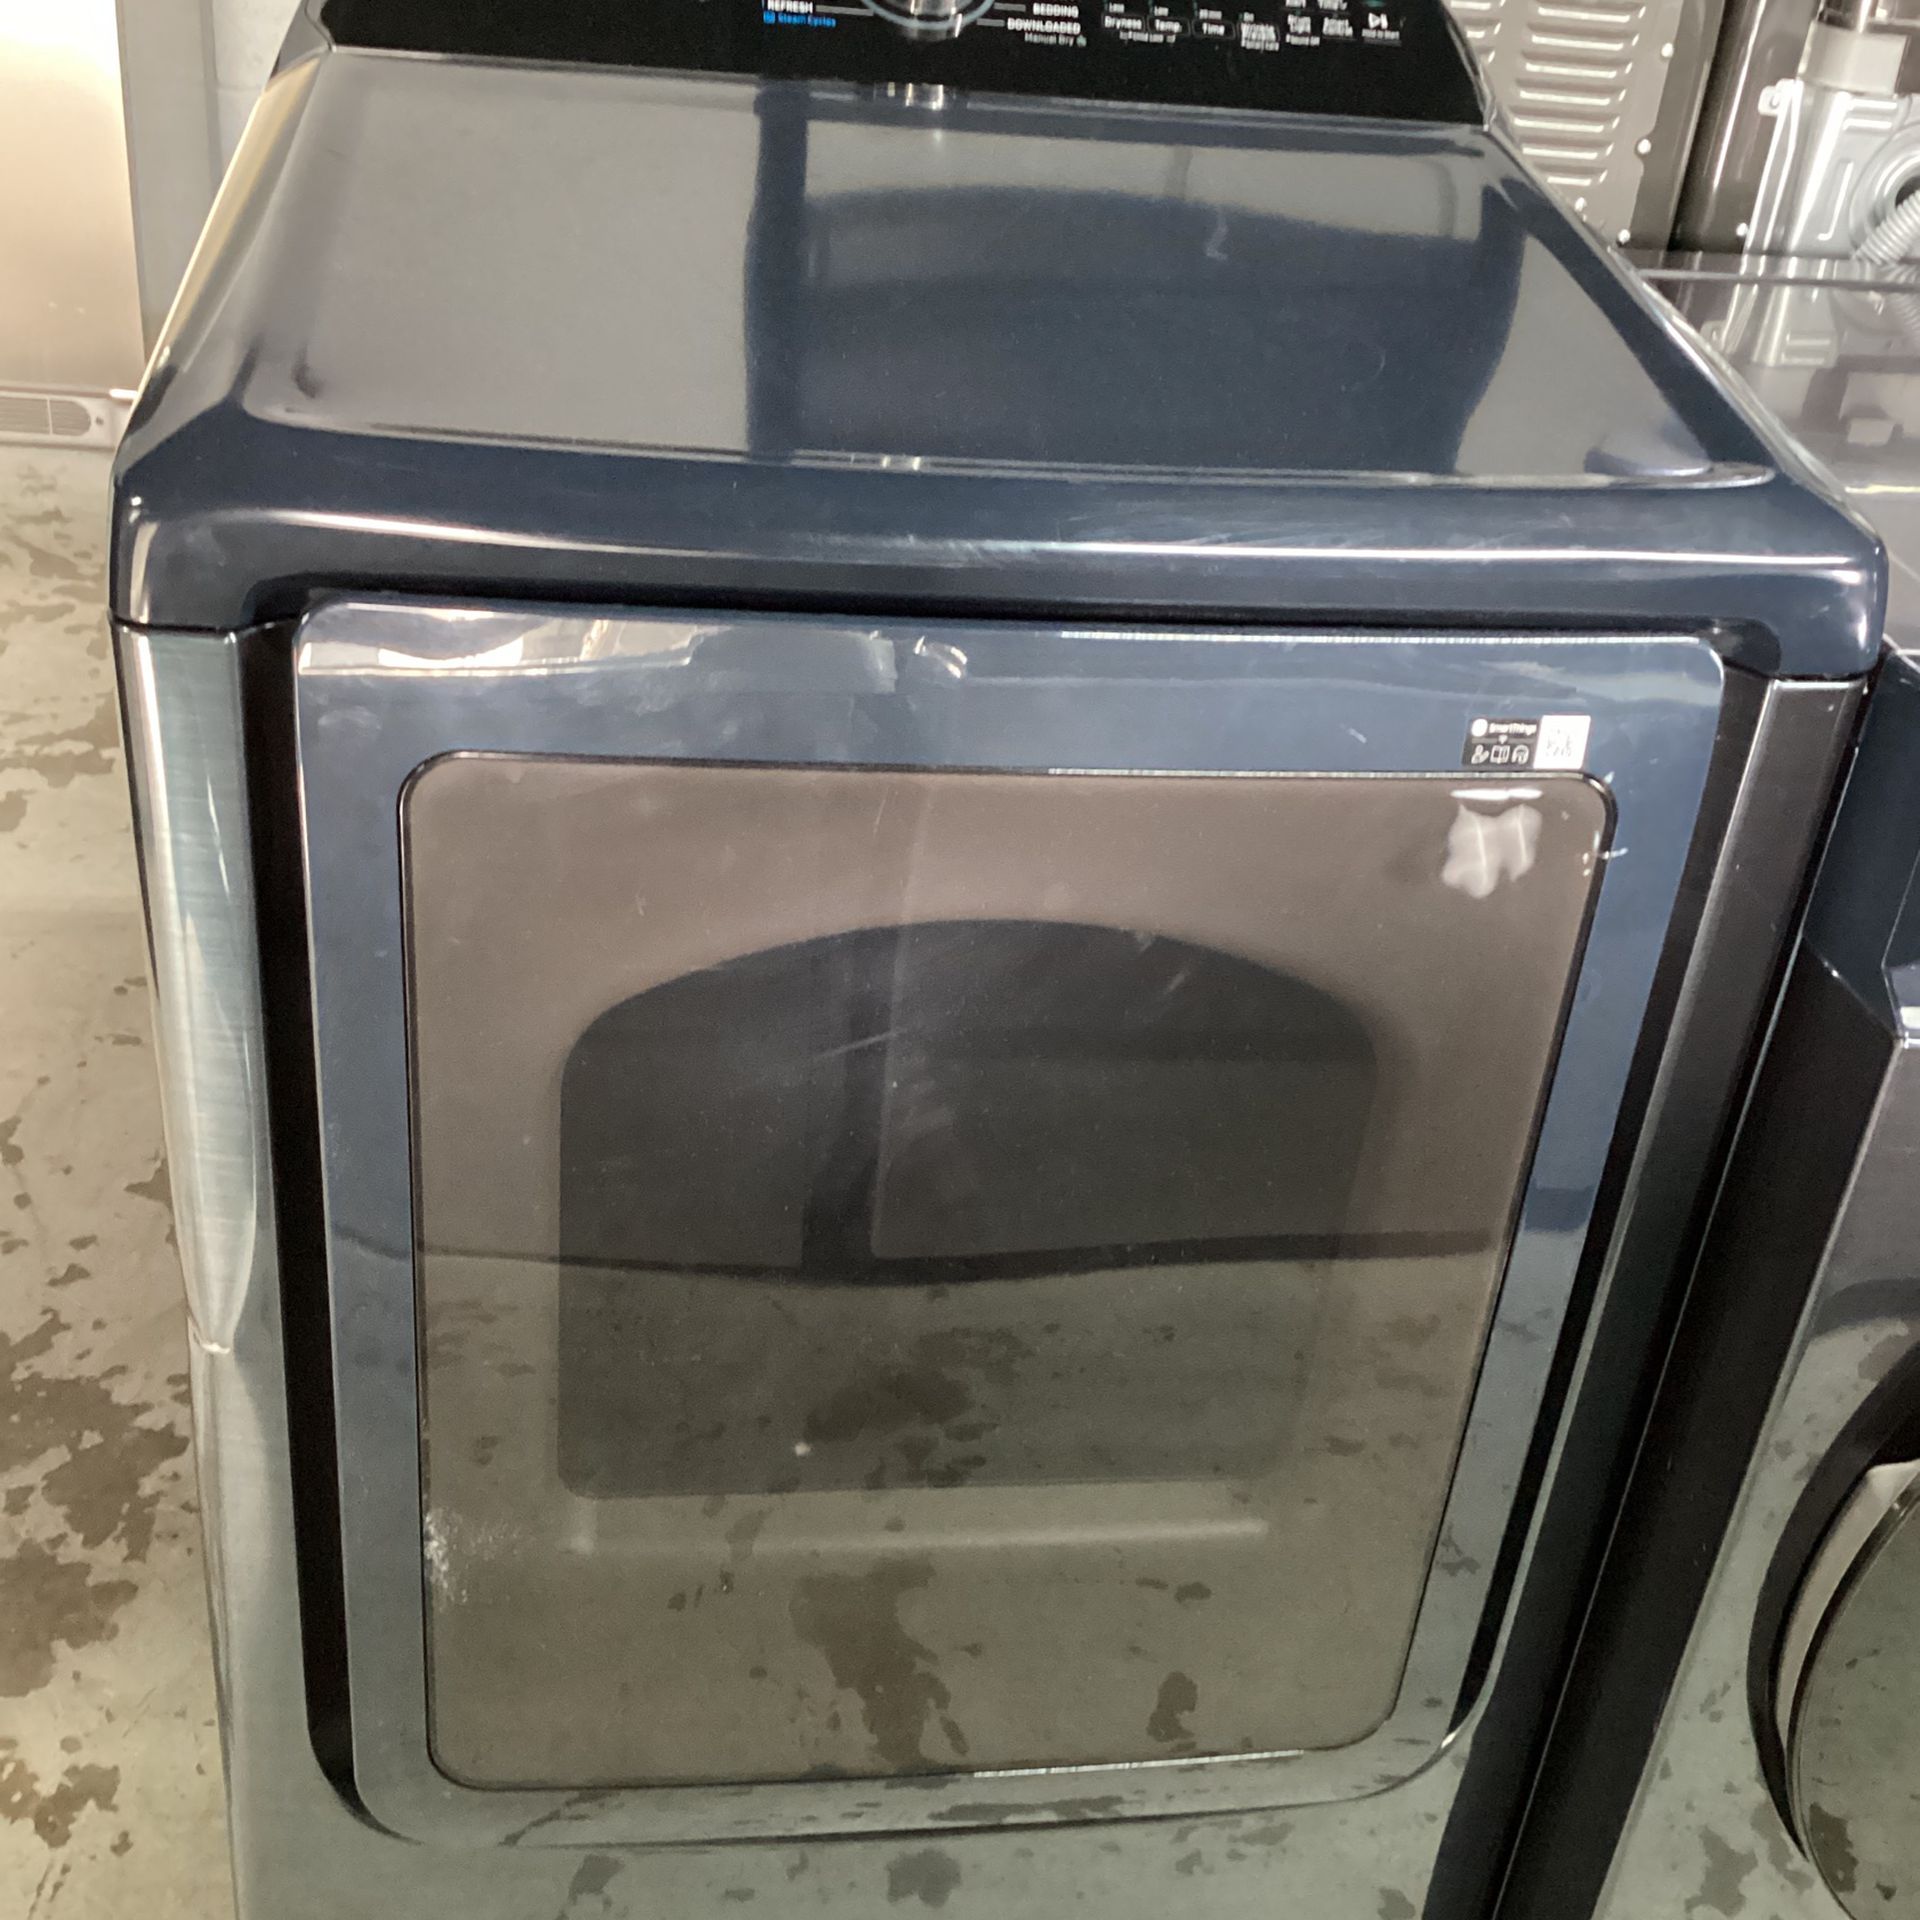 Samsung Dryer With 12 Speeds 